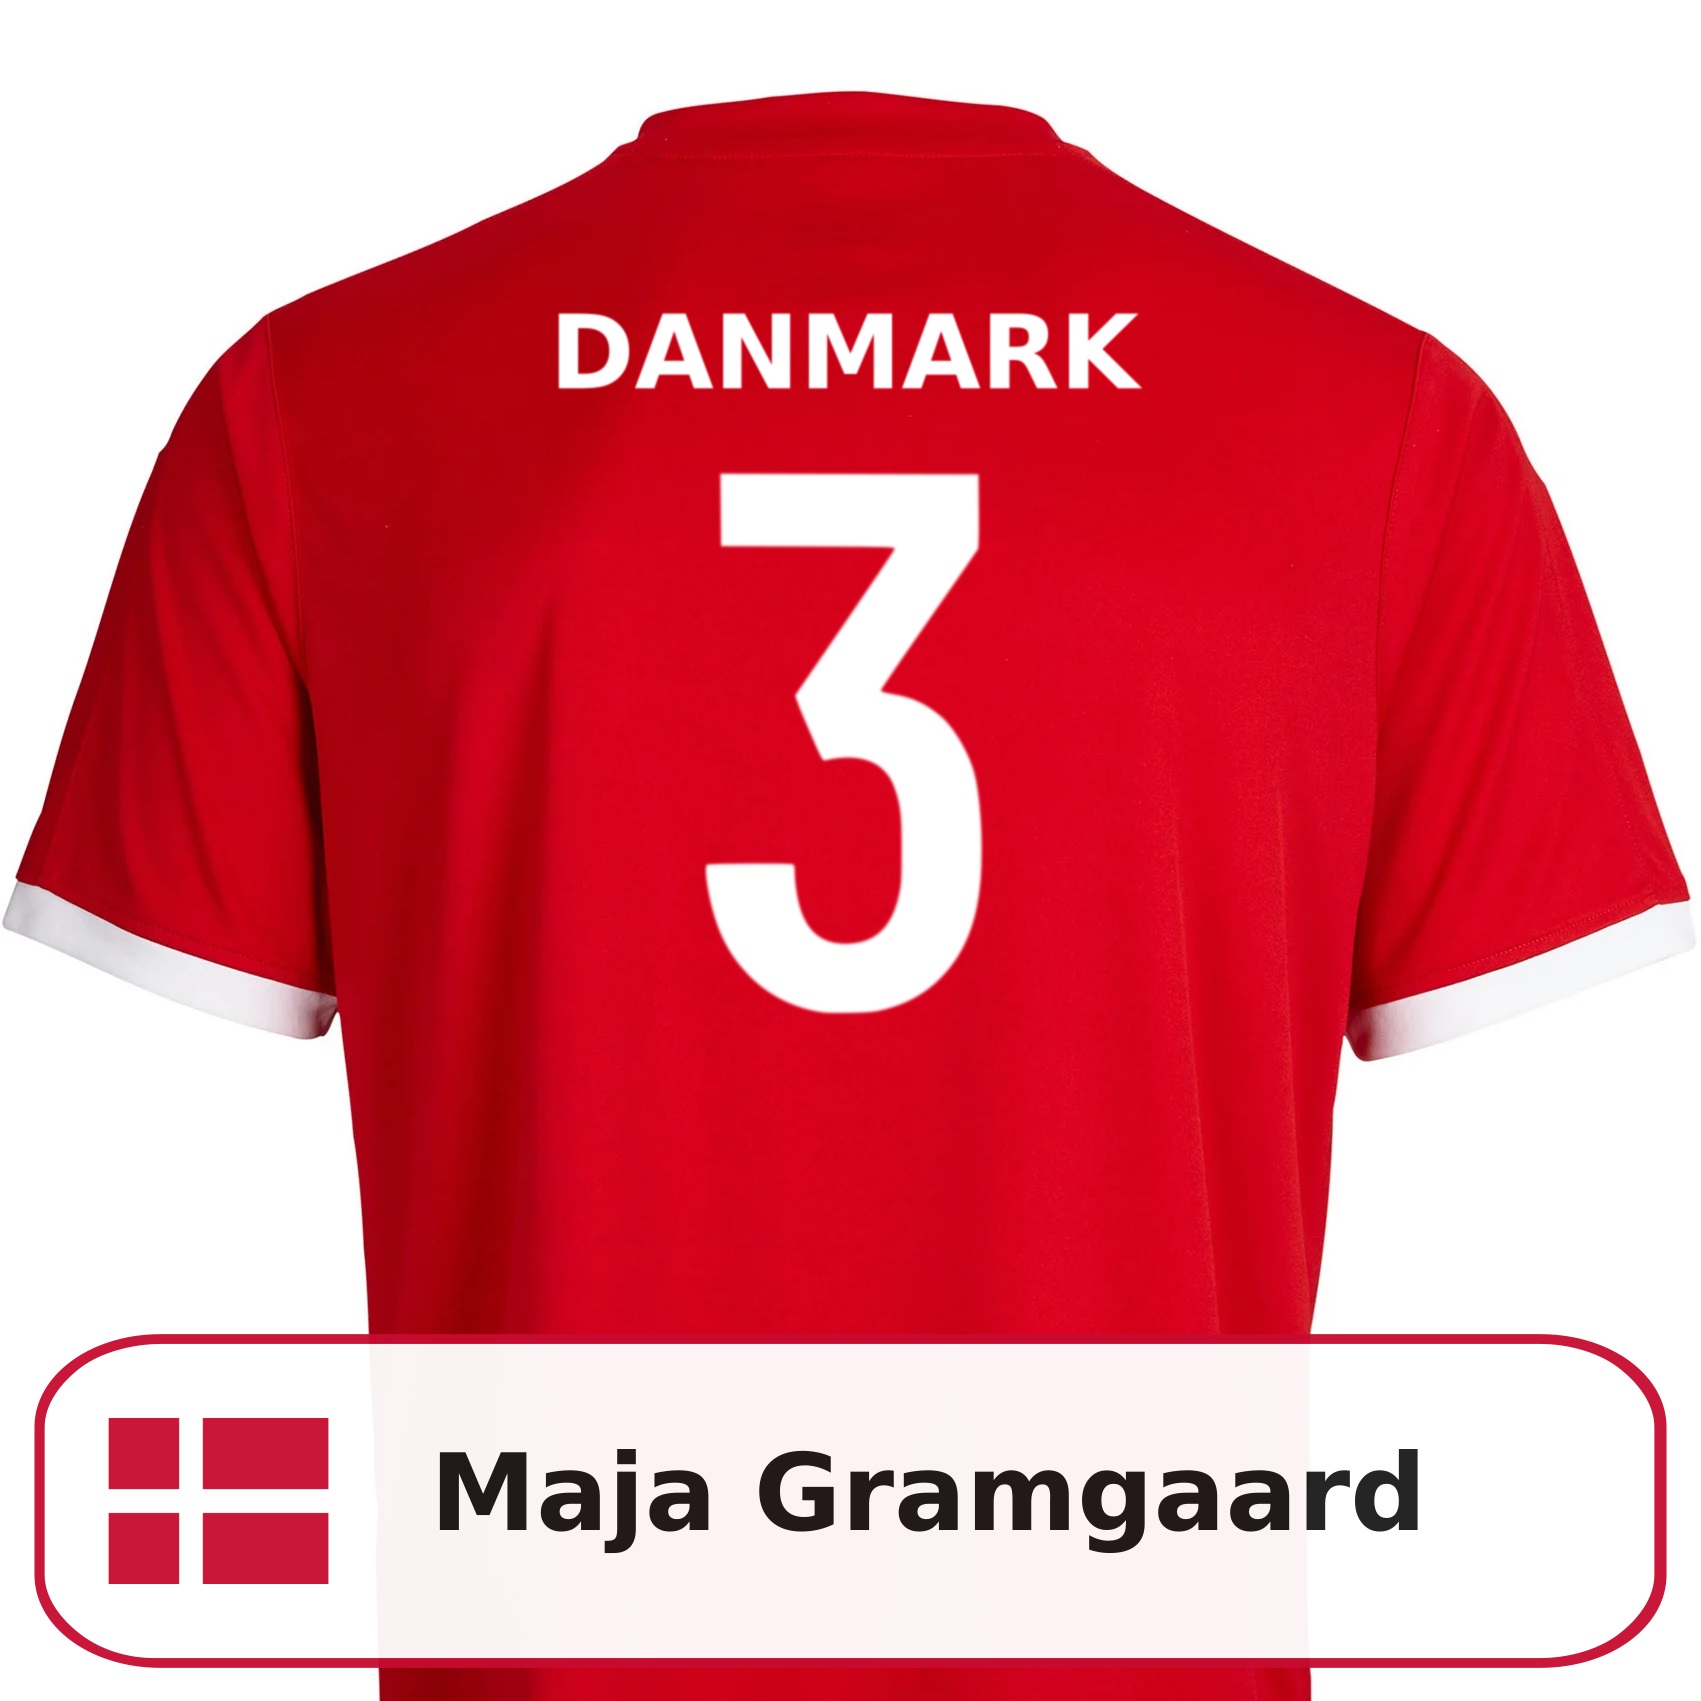 Maja Gramgaard